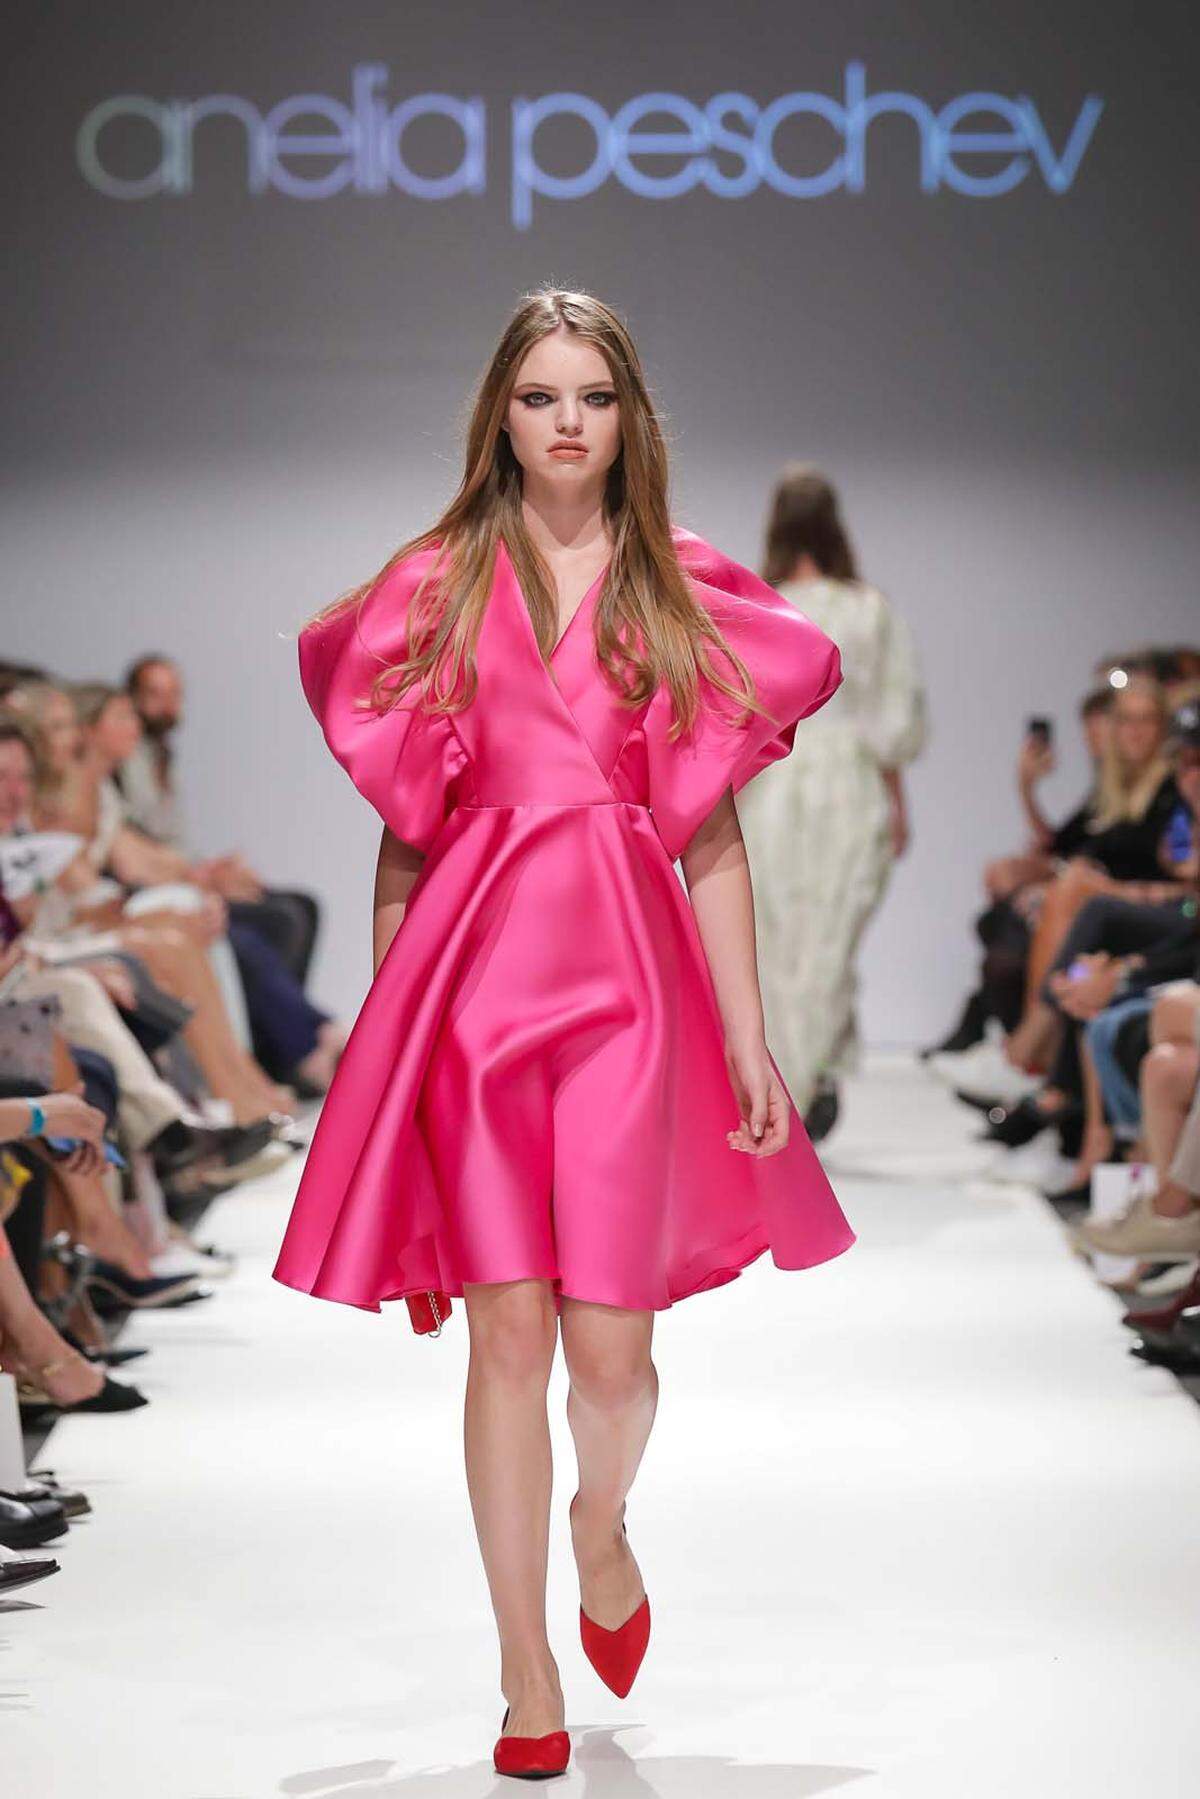 Die im bulgarischen Sofia geborene und in Wien aufgewachsene Modemacherin hat längst viele modeaffine Fans. 